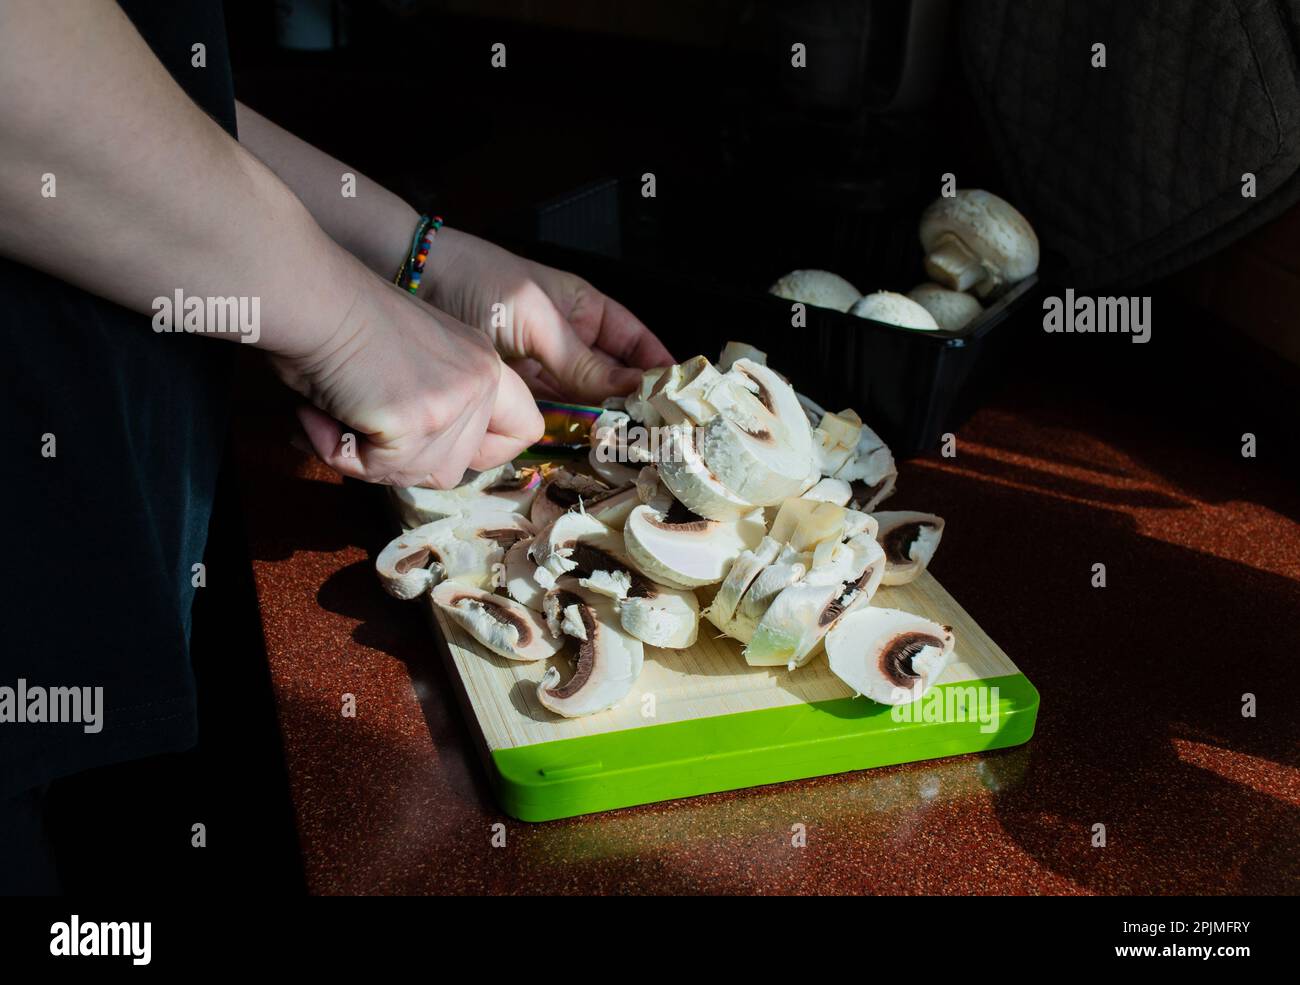 Primo piano delle mani con funghi freschi tagliati su un tagliere. Cucina vegetariana fatta in casa. Luce solare dalla finestra, ombre sul tavolo. Foto Stock